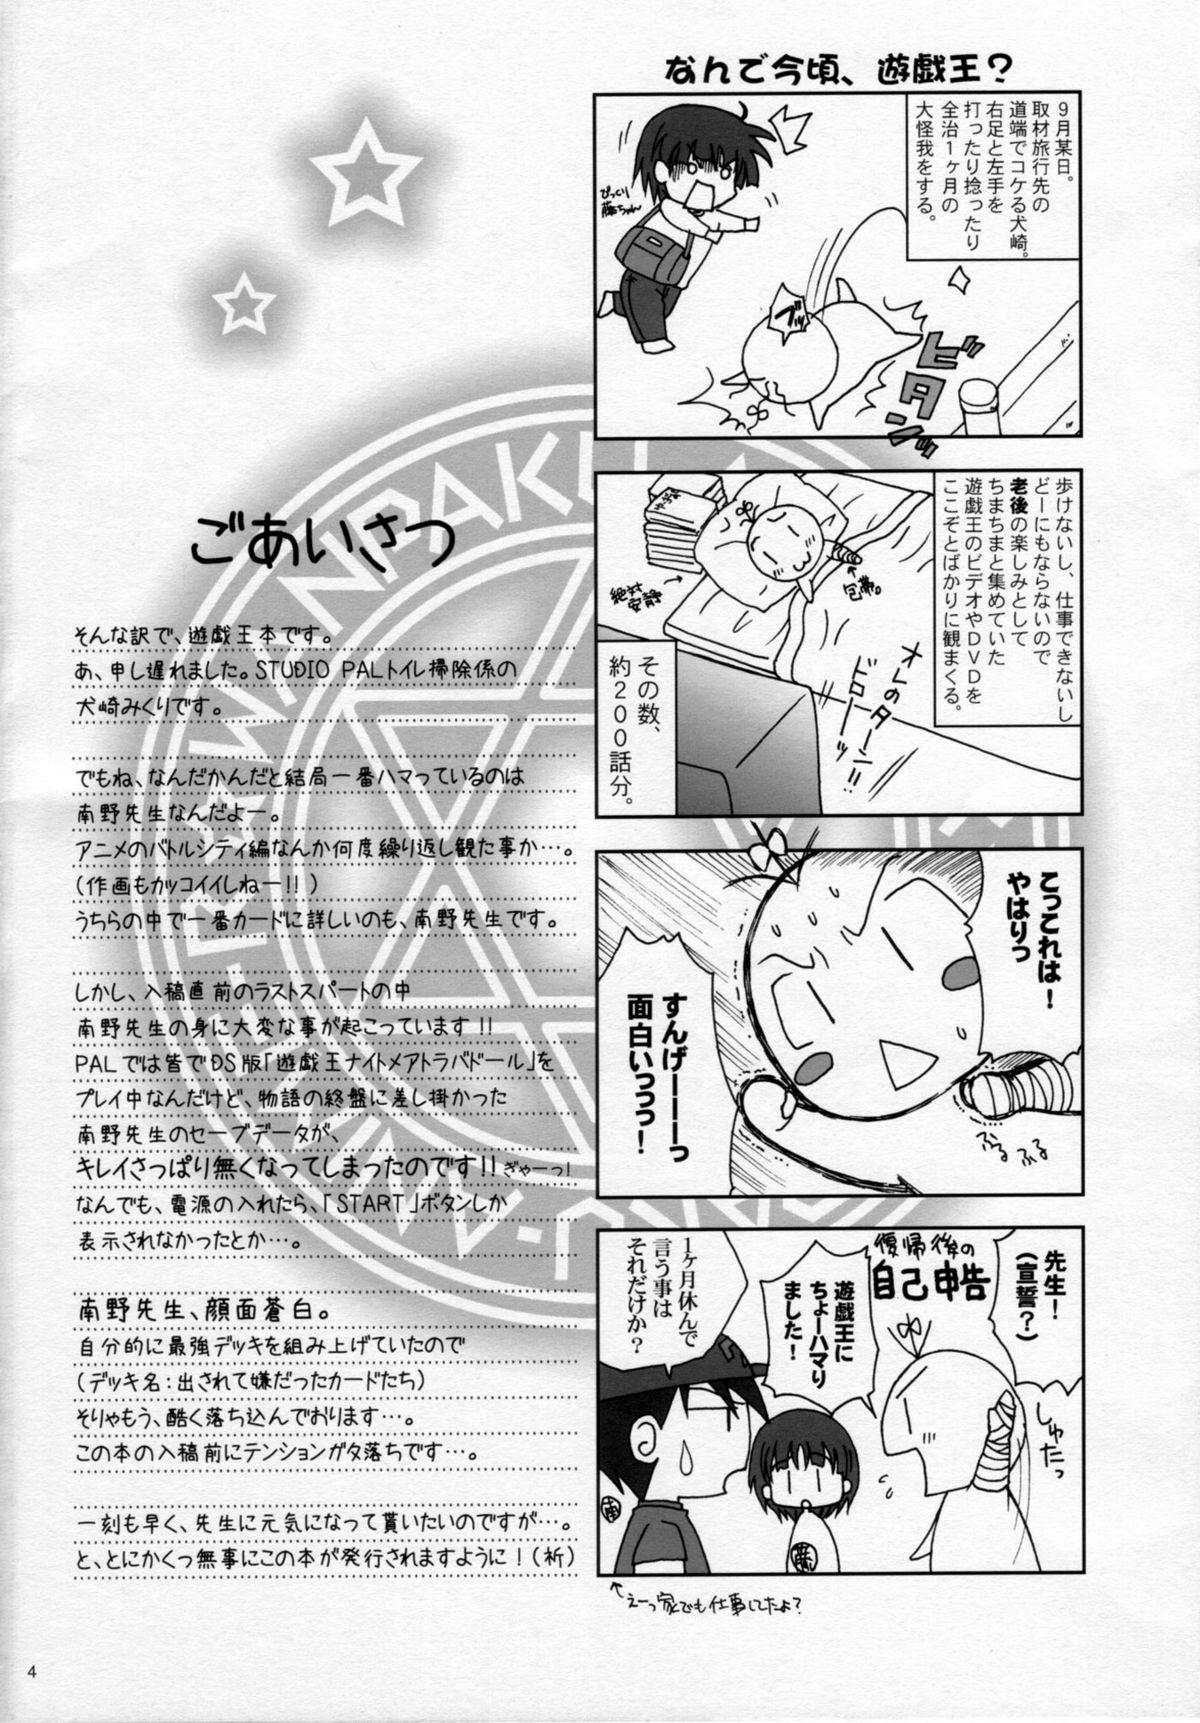 8teenxxx Wanpaku-Anime R - Yu gi oh Porno Amateur - Page 3